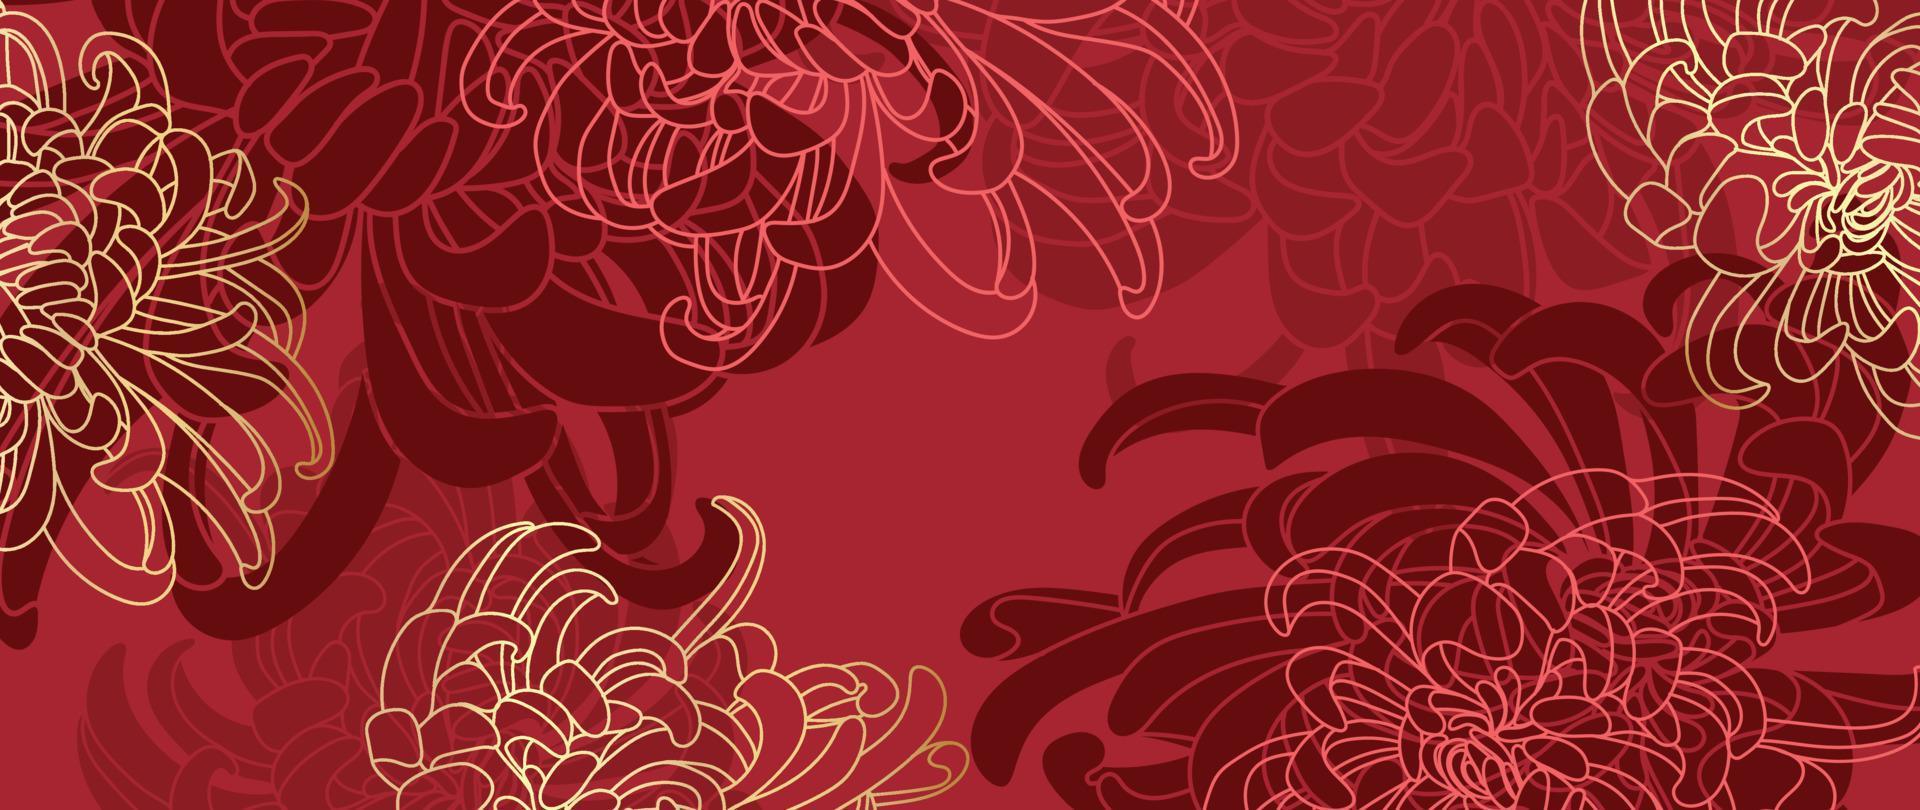 vecteur de fond de modèle de style de luxe de joyeux nouvel an chinois. dessin au trait de fleurs de mamans orientales avec texture de couleur or et rouge. illustration de conception pour papier peint, carte, affiche, emballage, publicité.